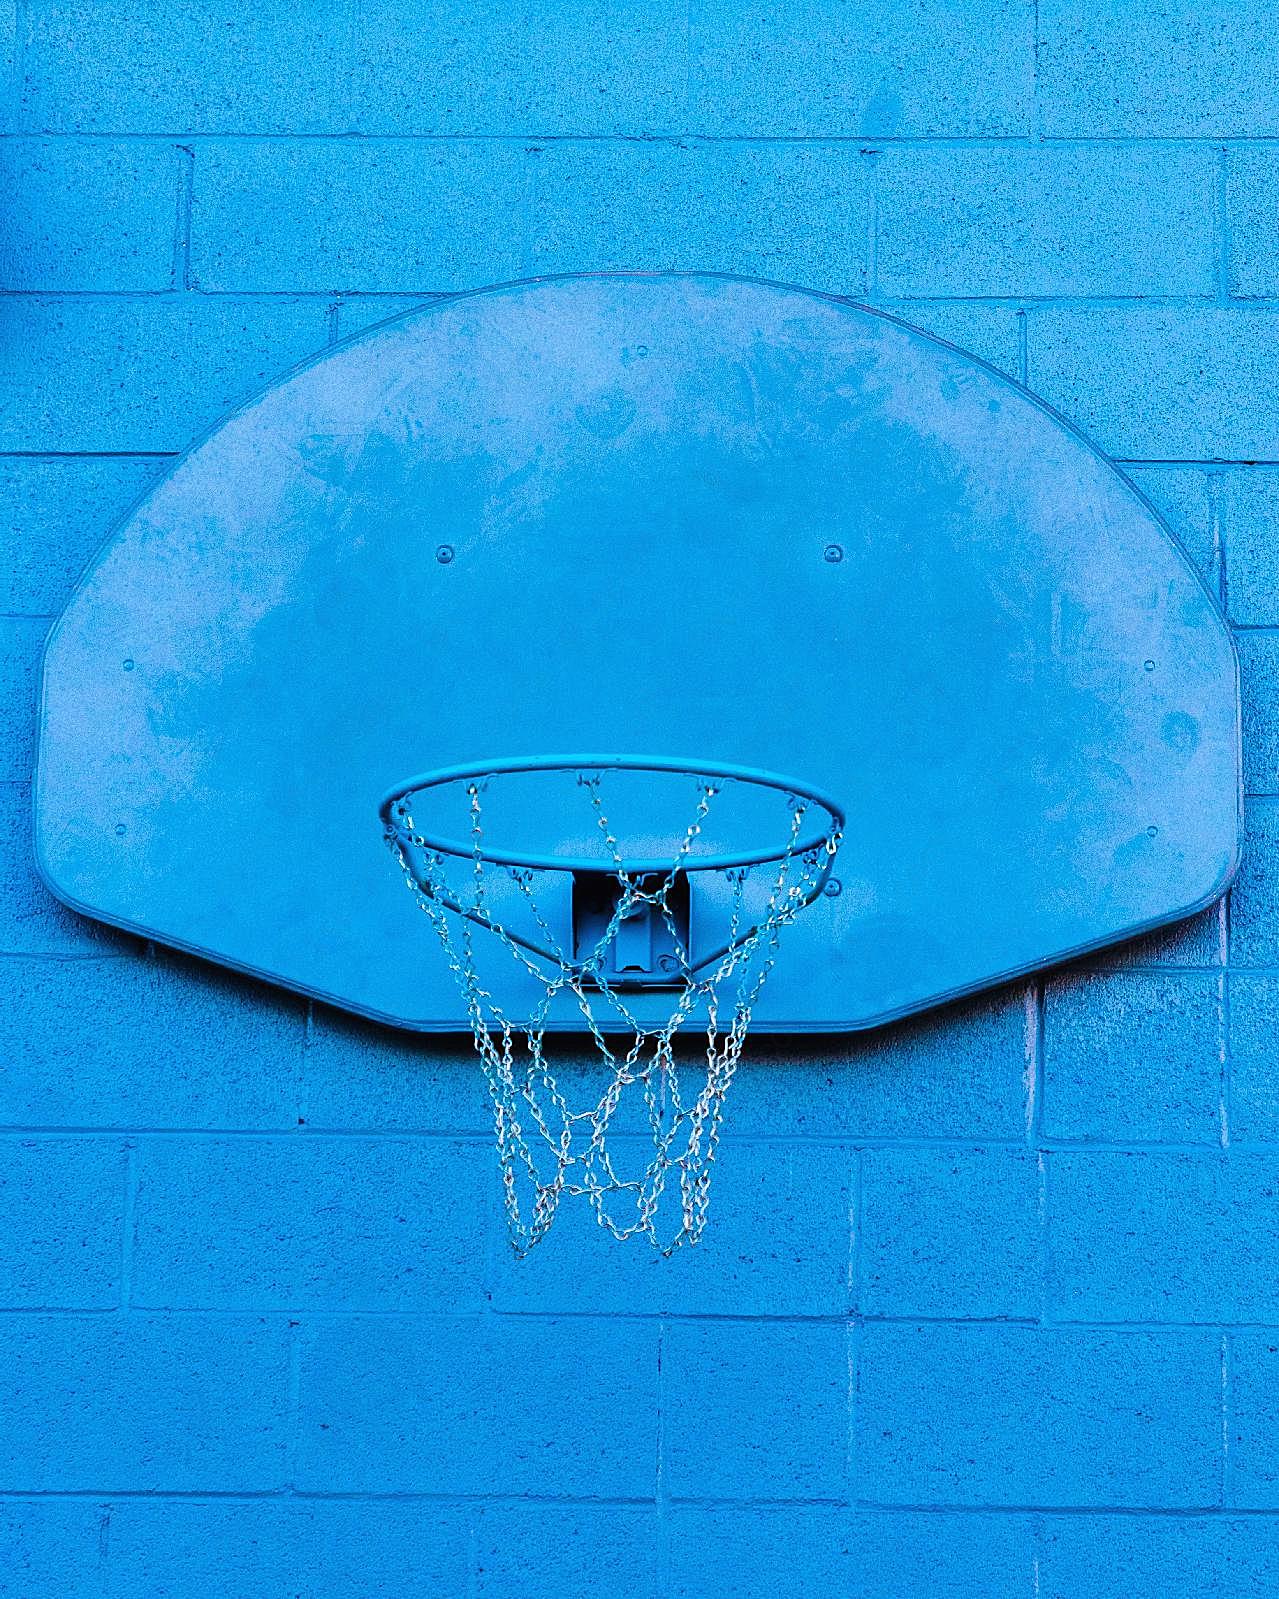 墙壁式篮球架图片生活用品